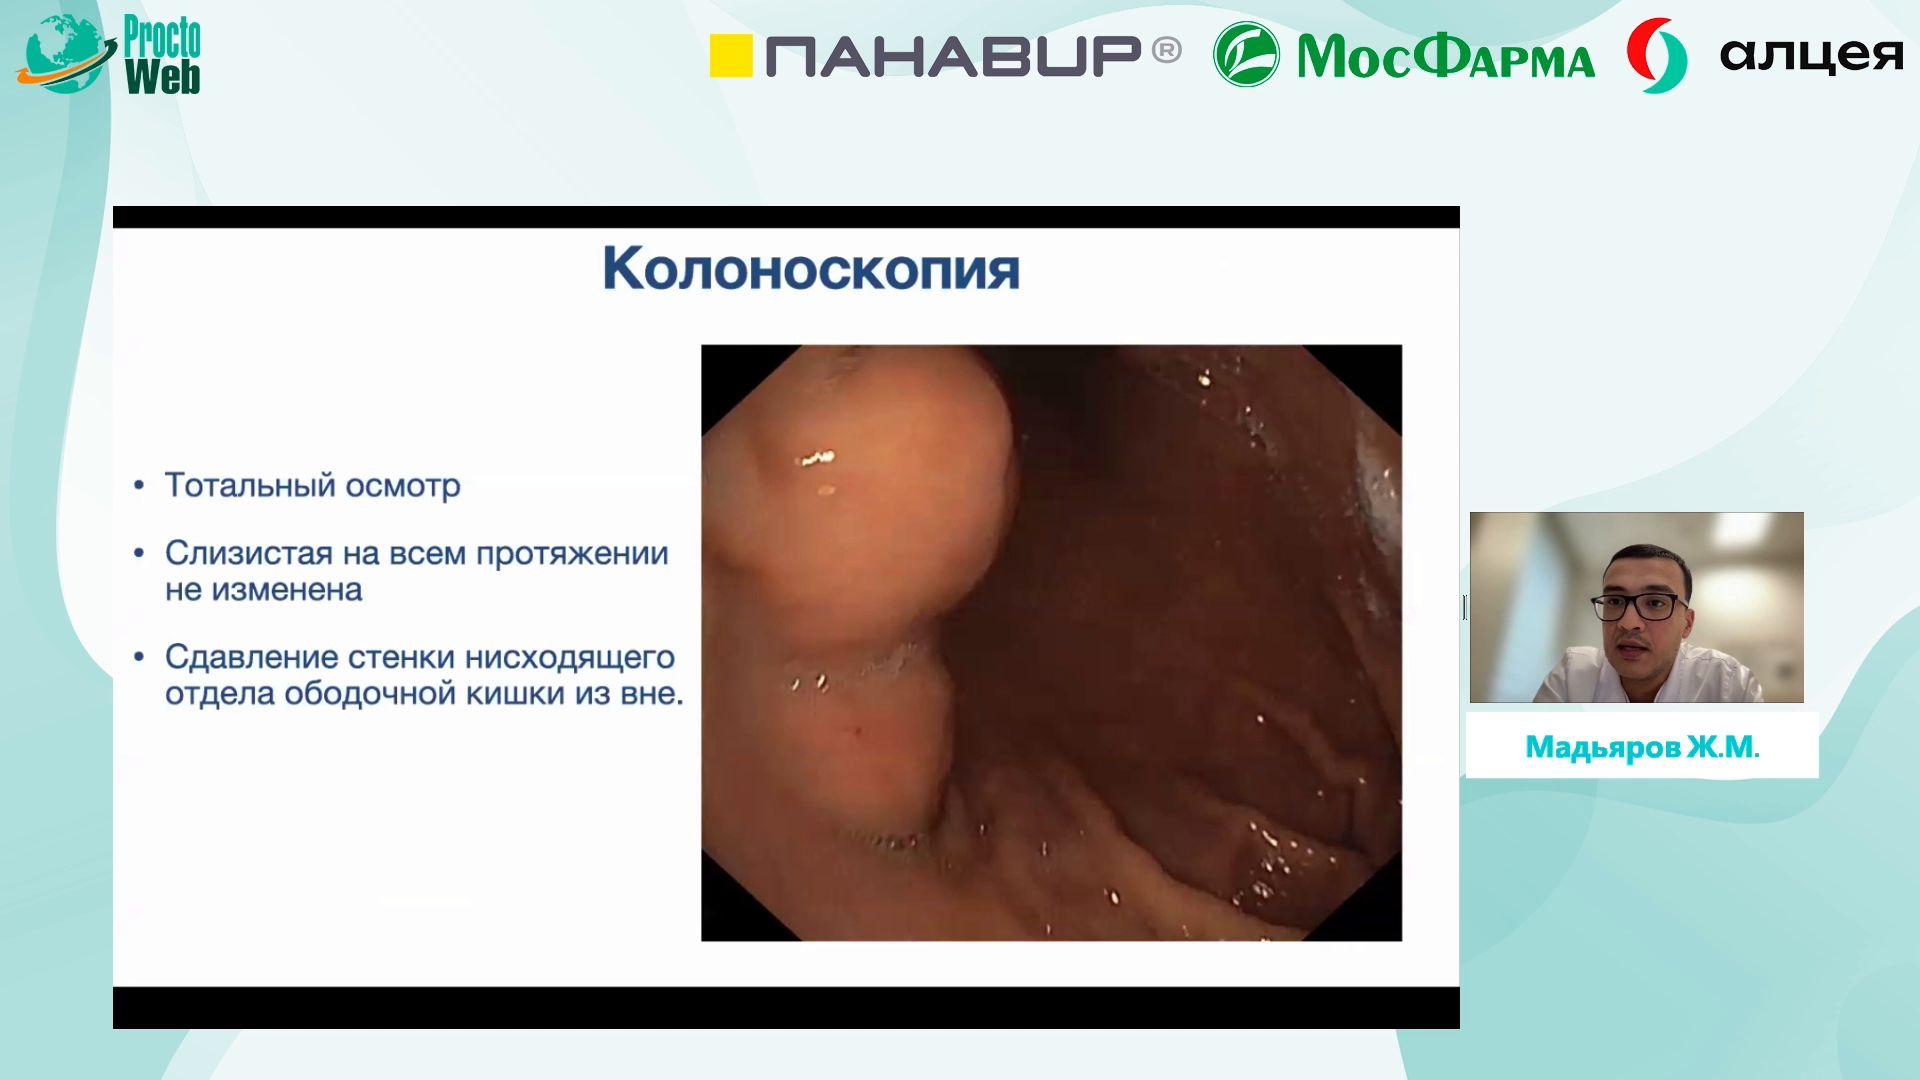 Мадьяров Ж.М. - Редкая ALK+ воспалительная миофибробластическая опухоль большого сальника